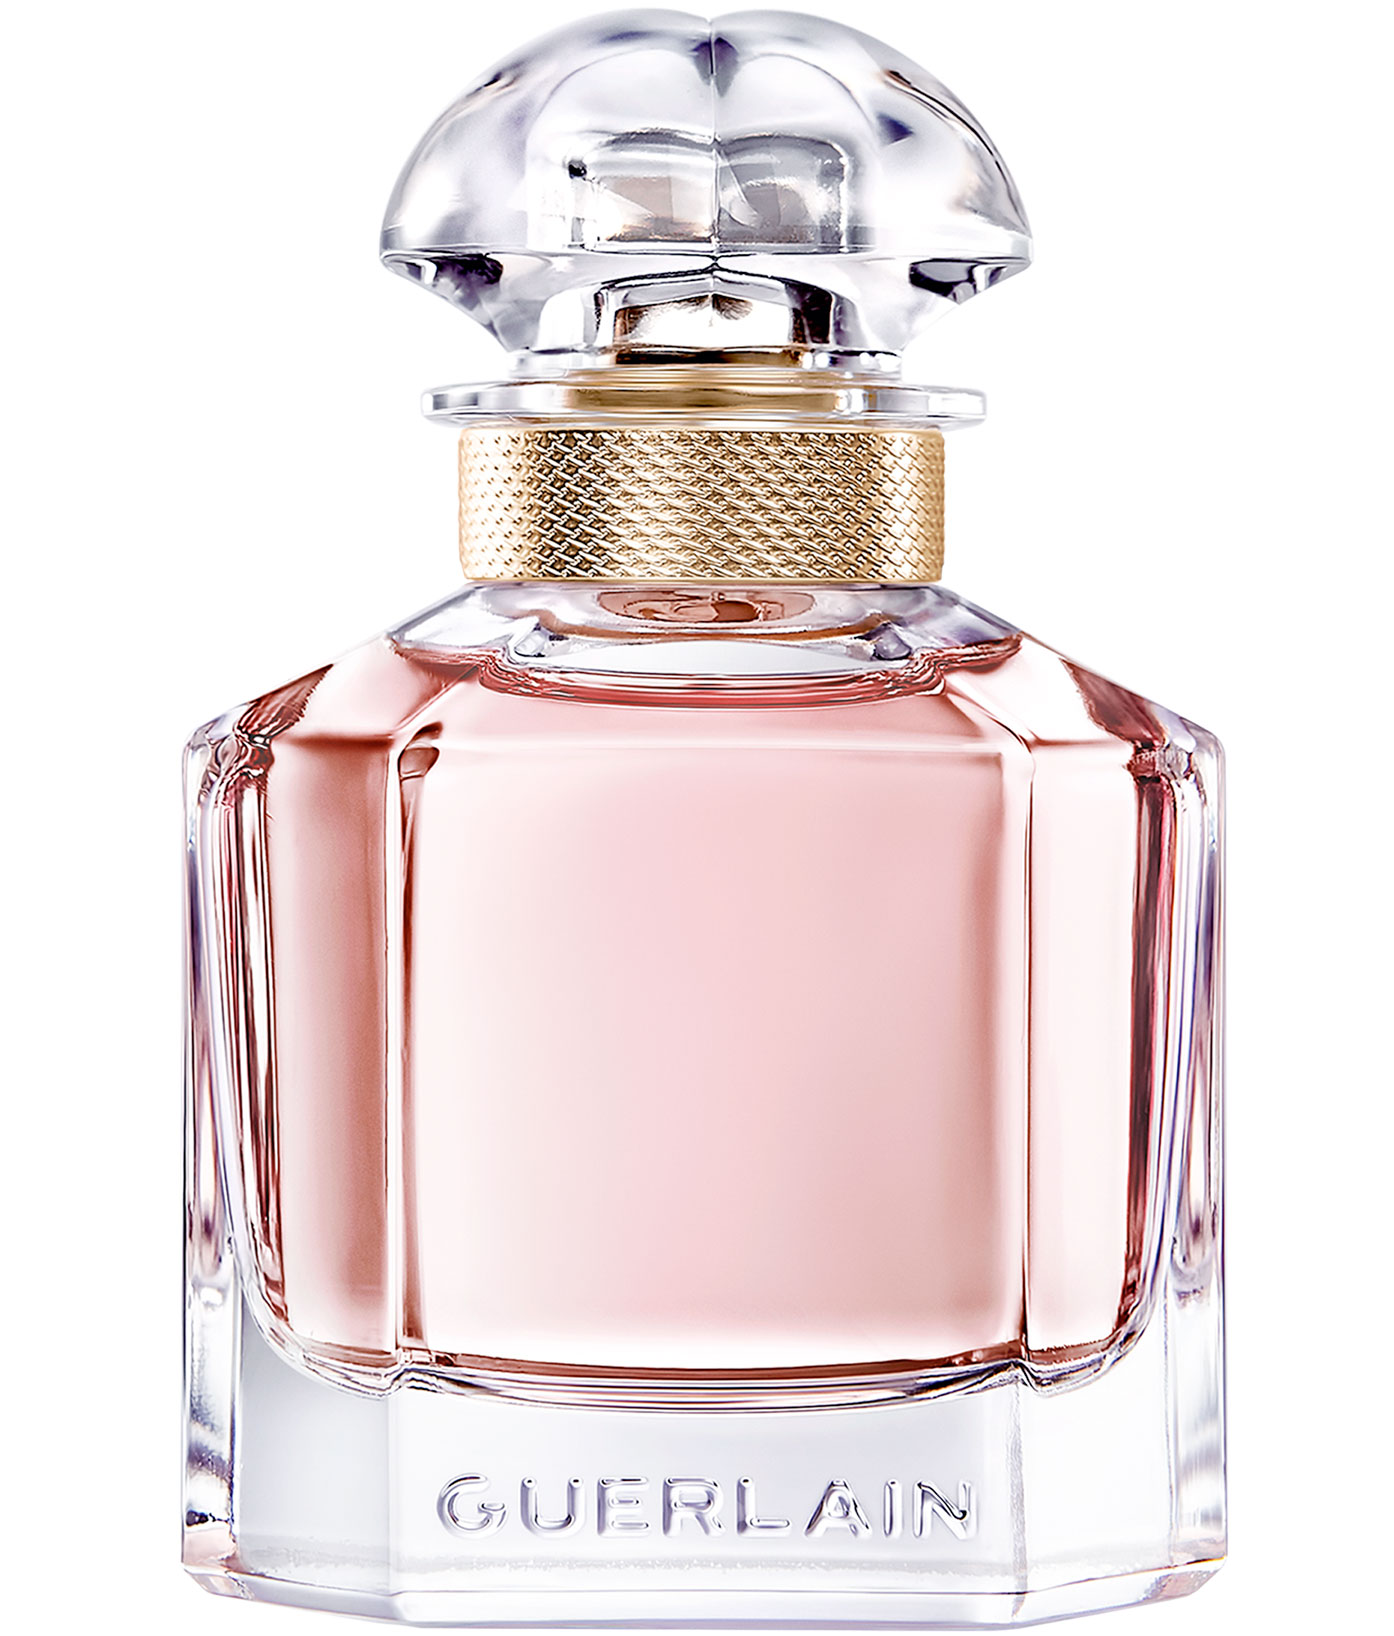 Mon Guerlain Guerlain parfum un nou parfum de dama 2017